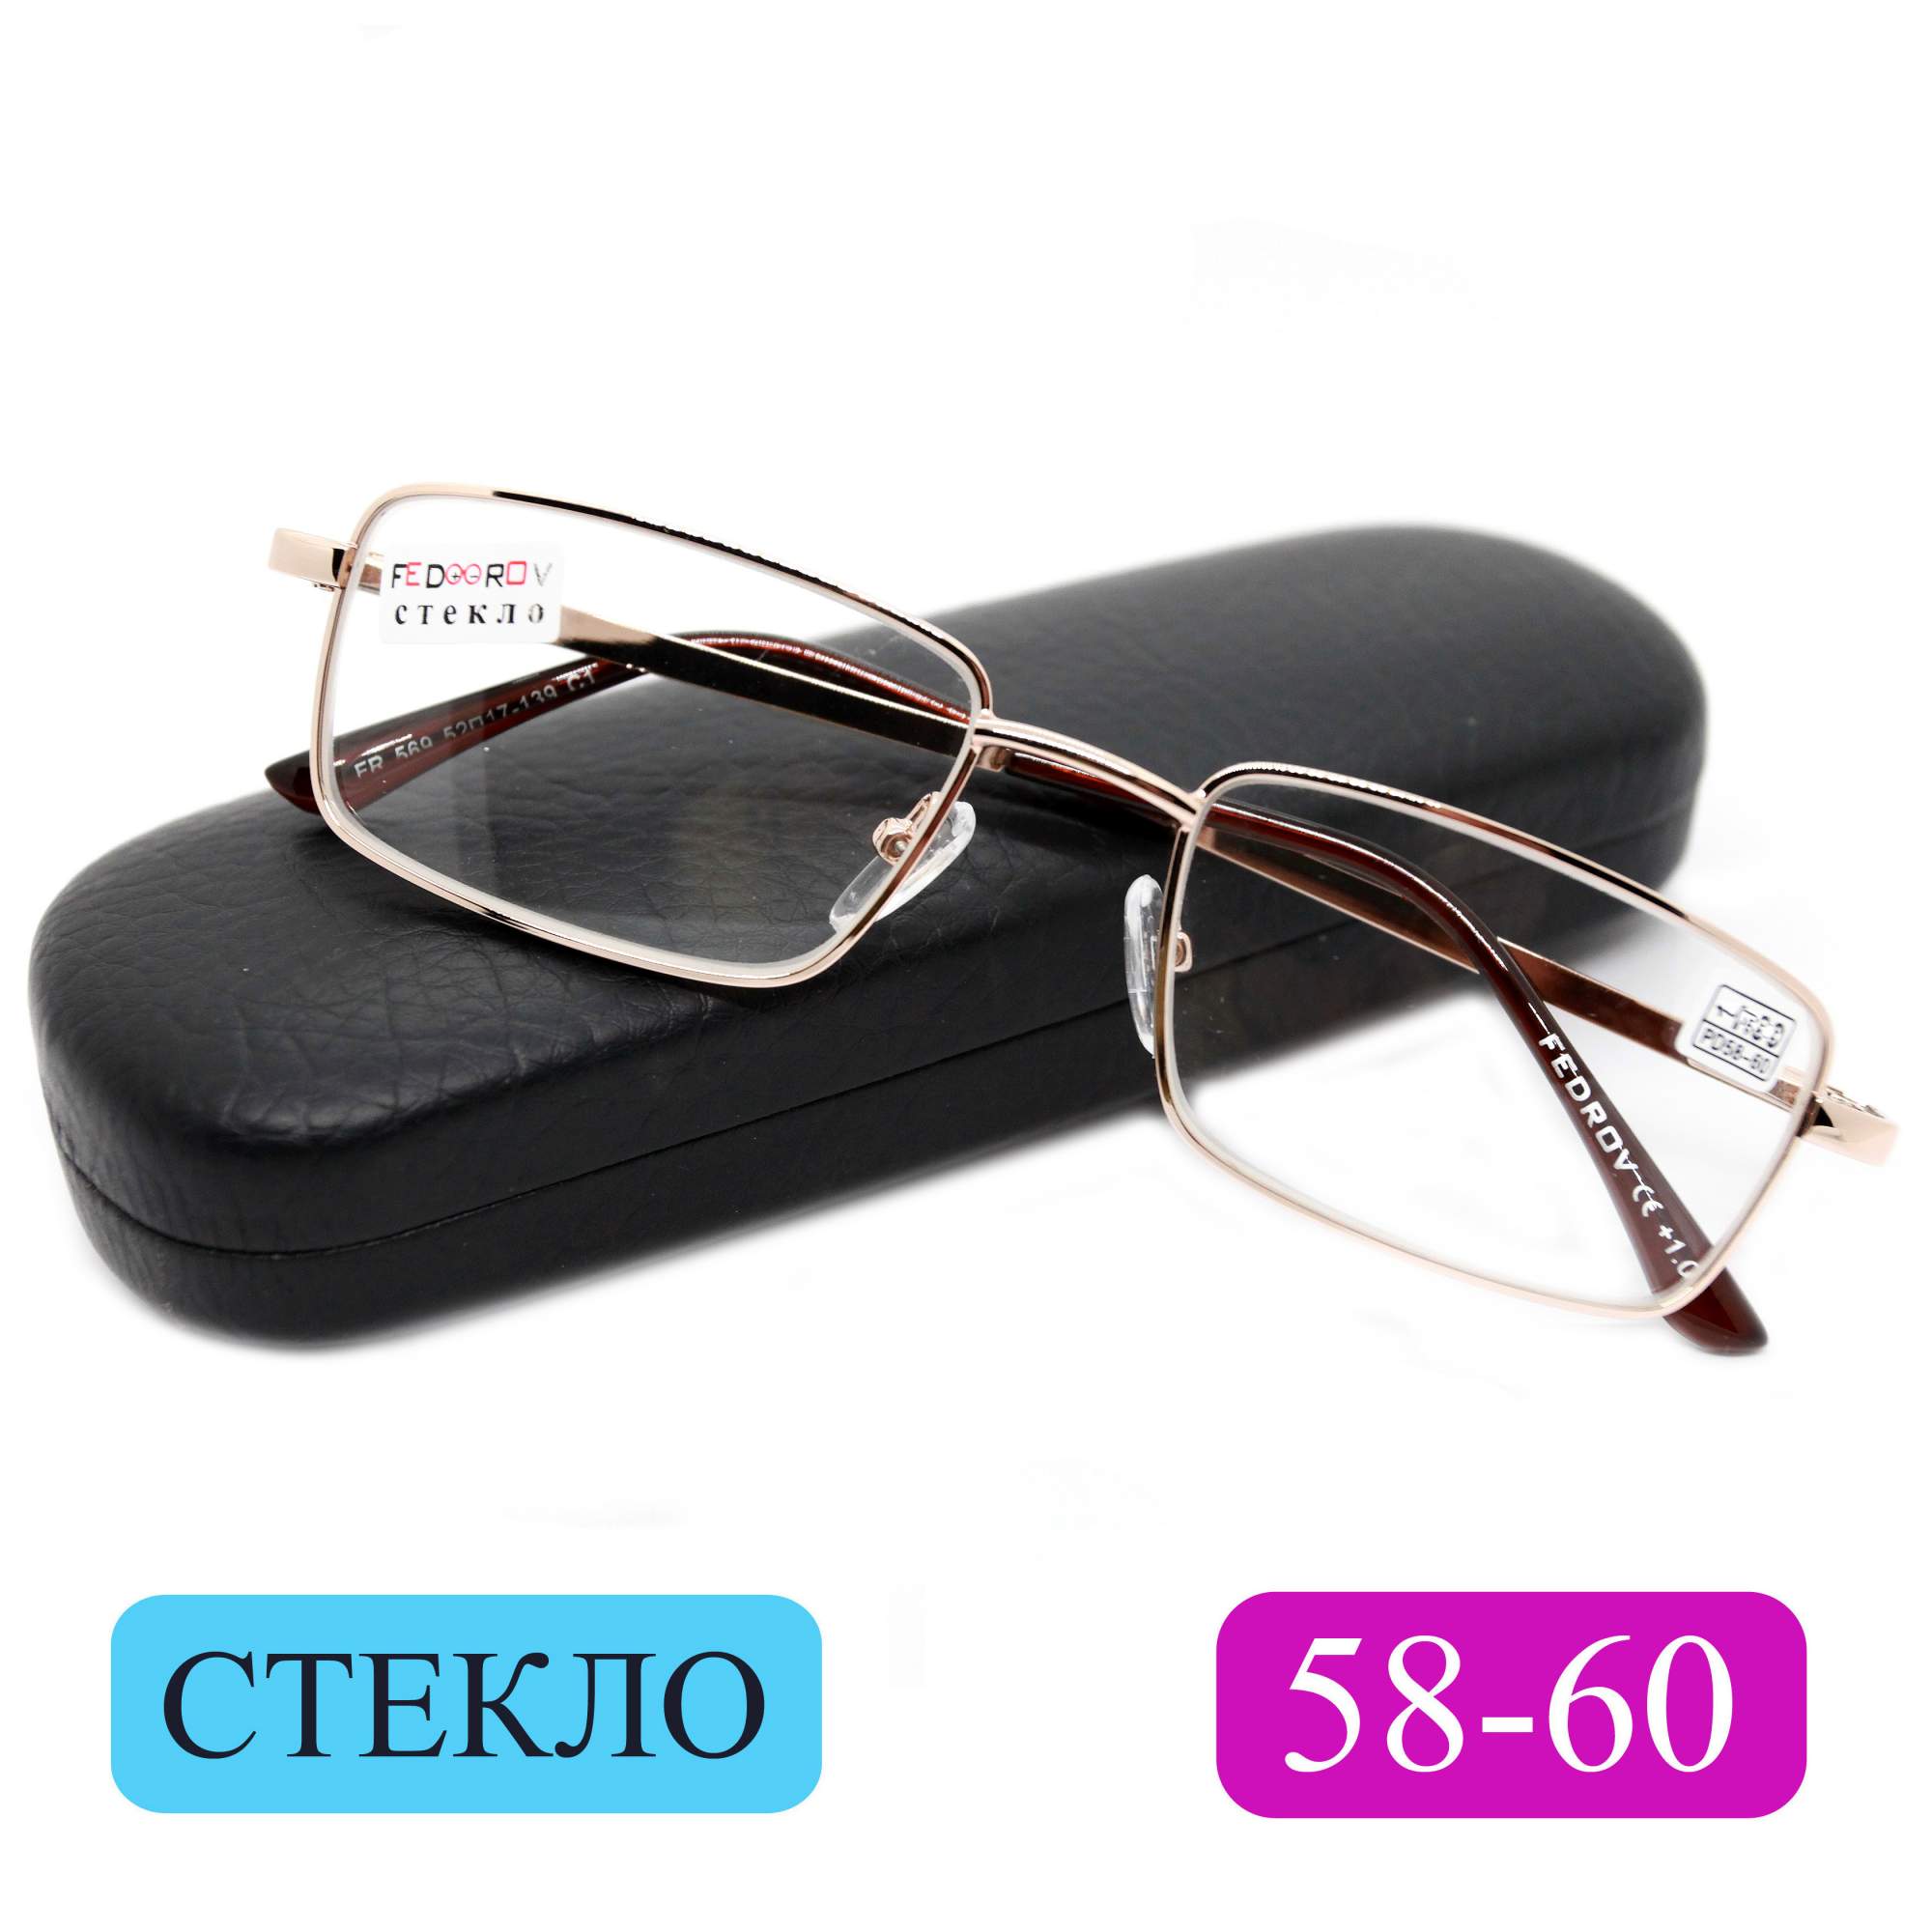 Готовые очки Fedrov 569, со стеклянной линзой, +1,50, c футляром, золотые, РЦ 58-60